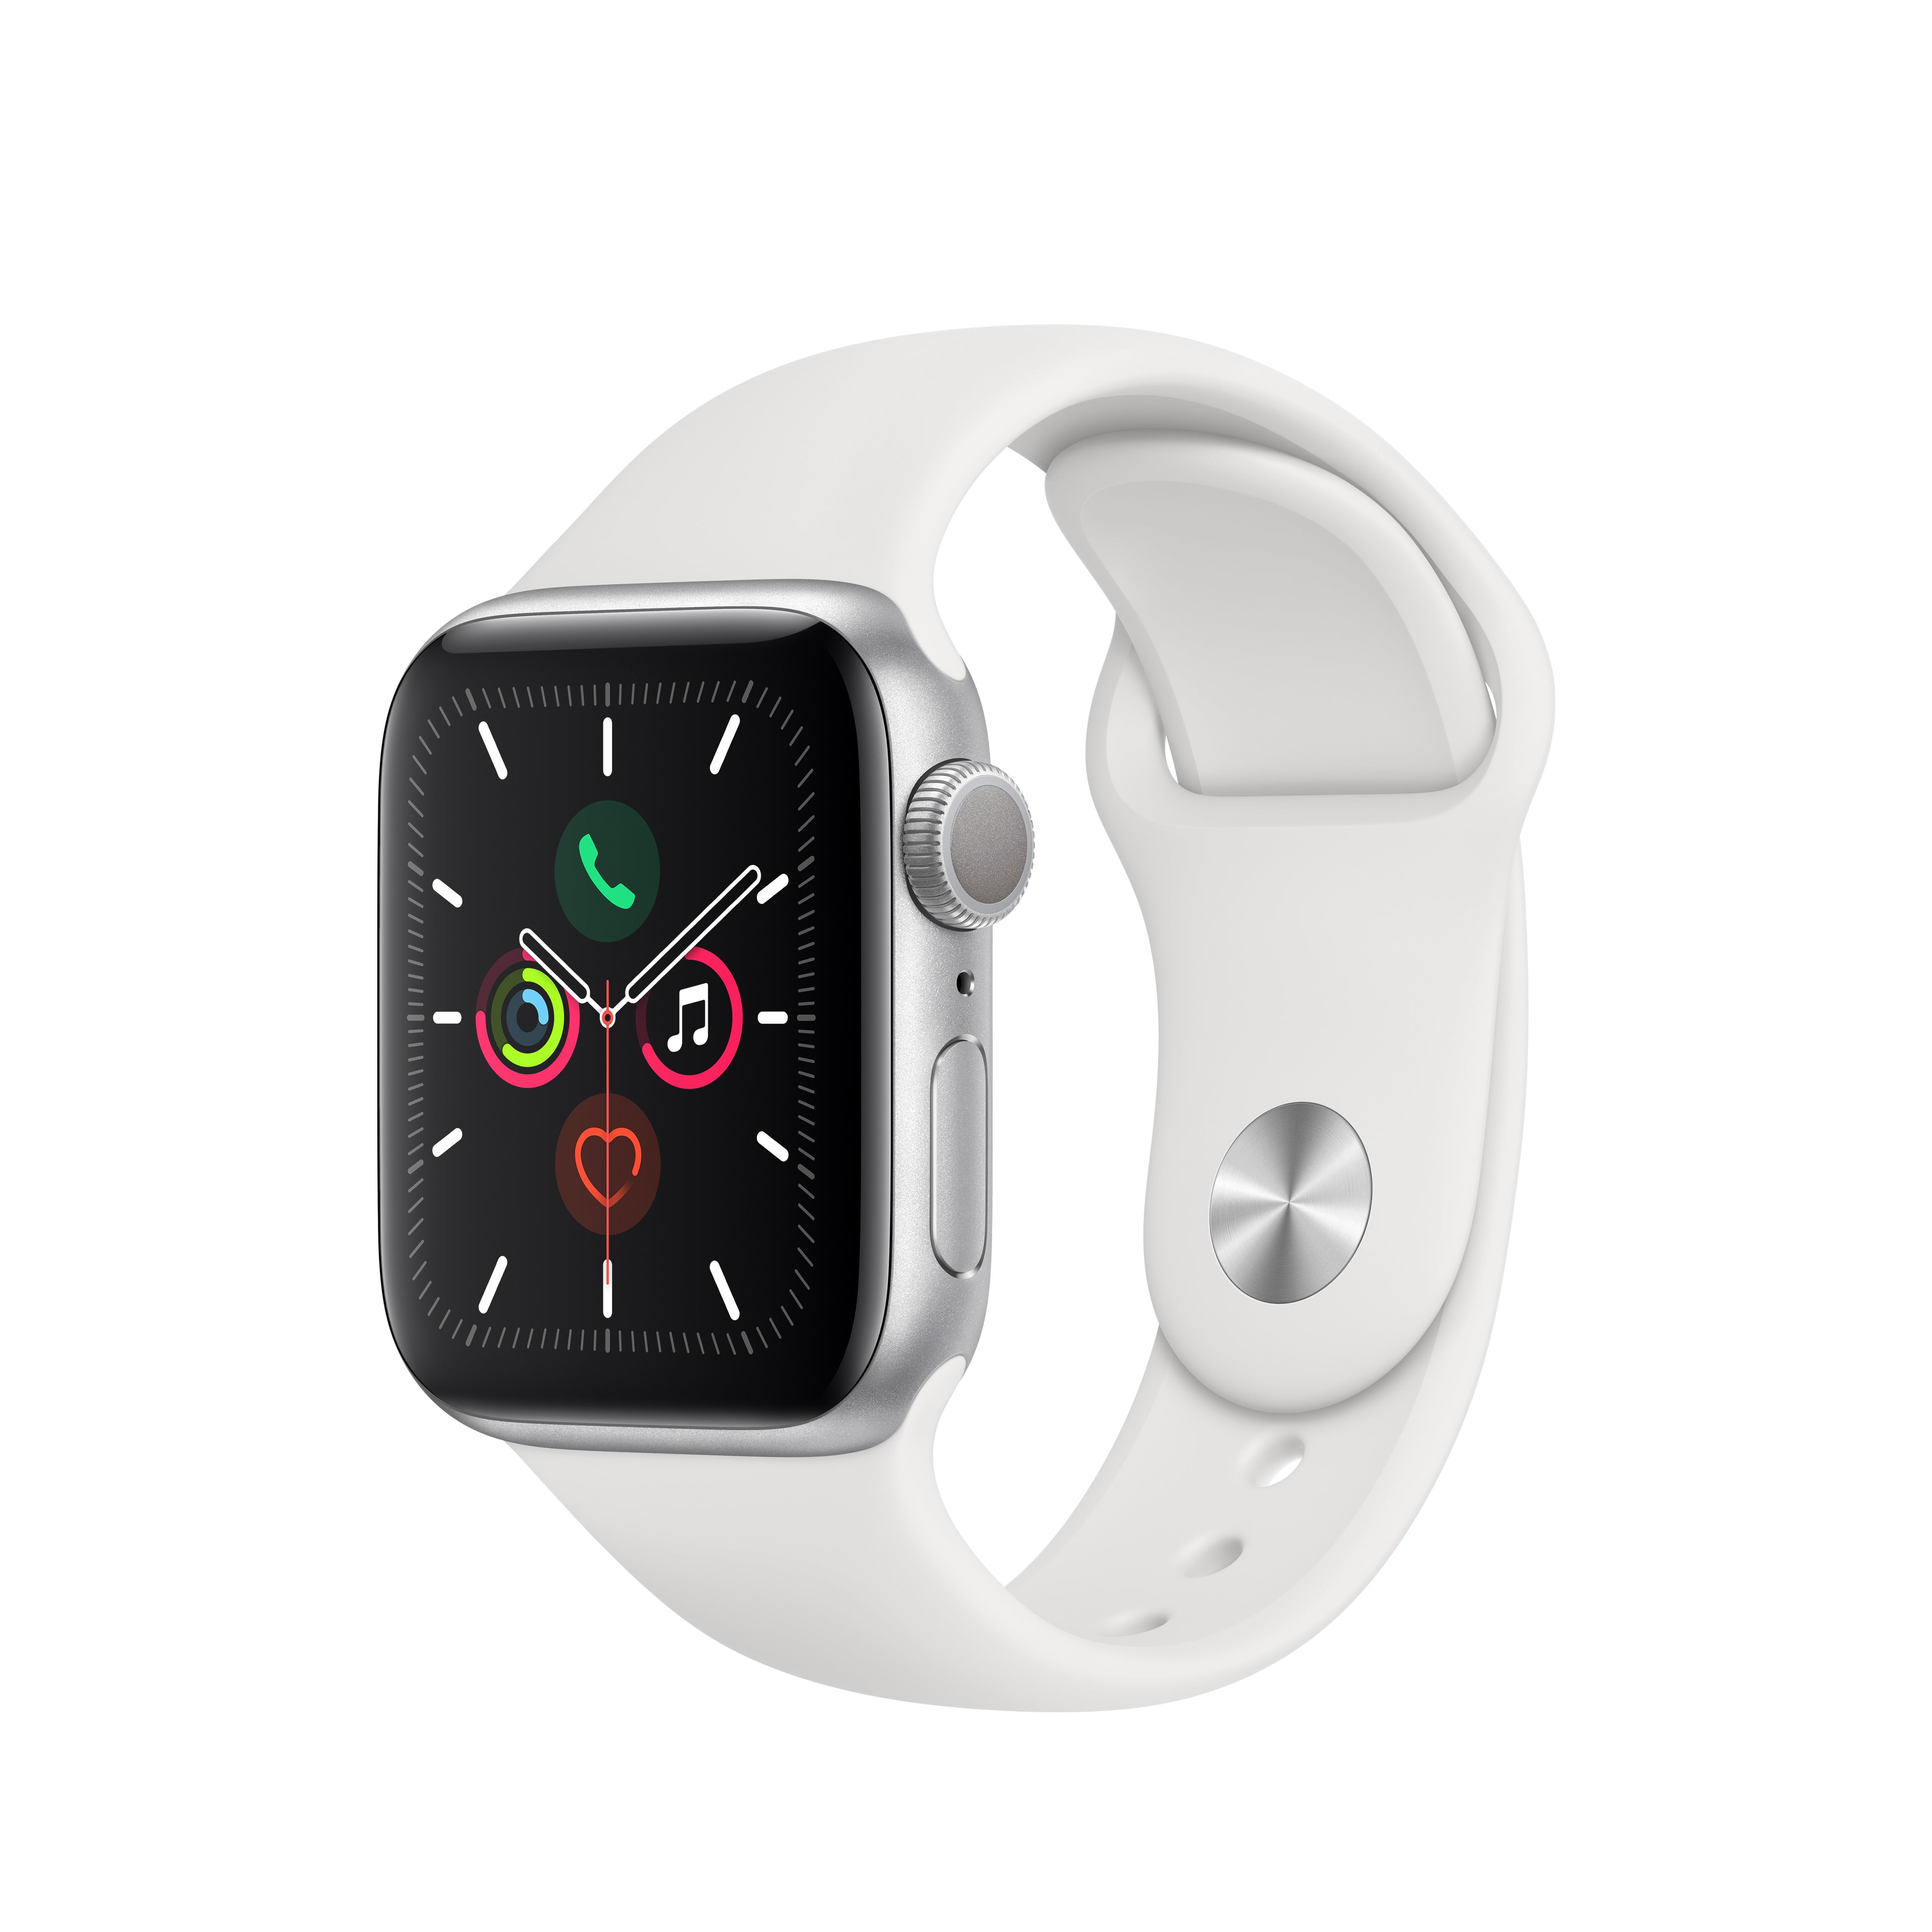 Apple Watch Series 5 Case Walmart Hotsell, 57% OFF | www 